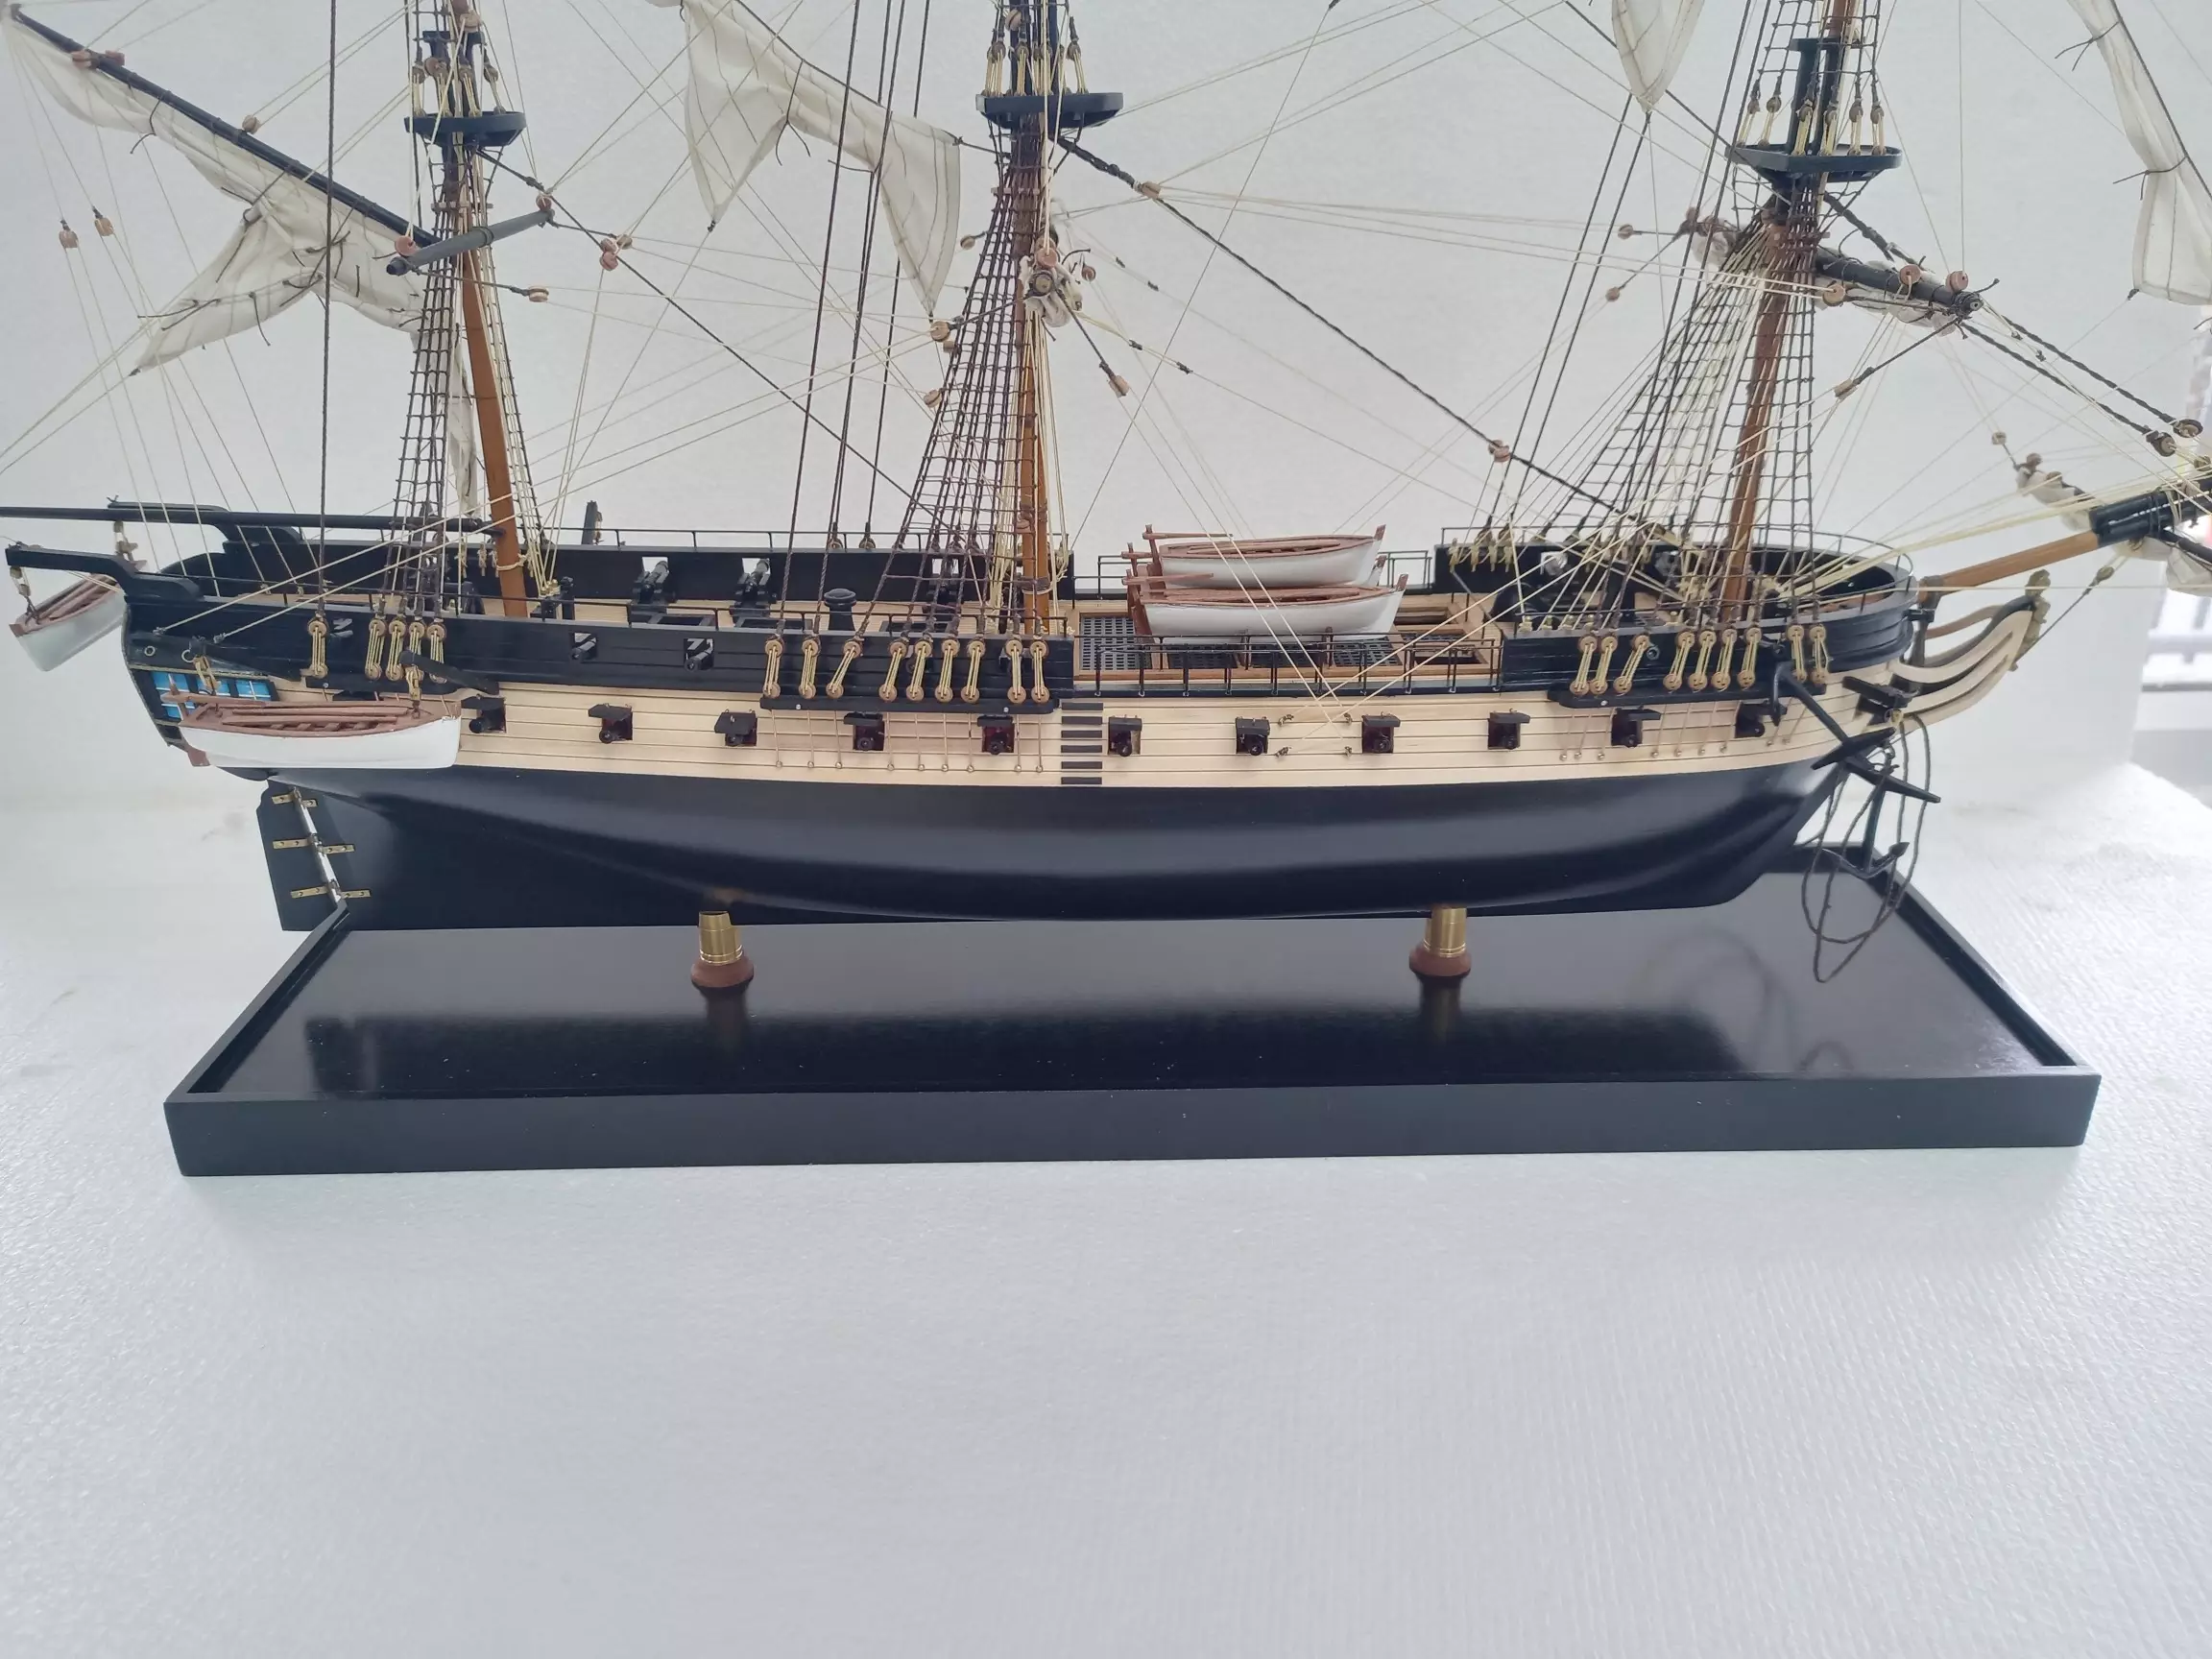 Golden Hind Ship Model (Superior Range) - PSM